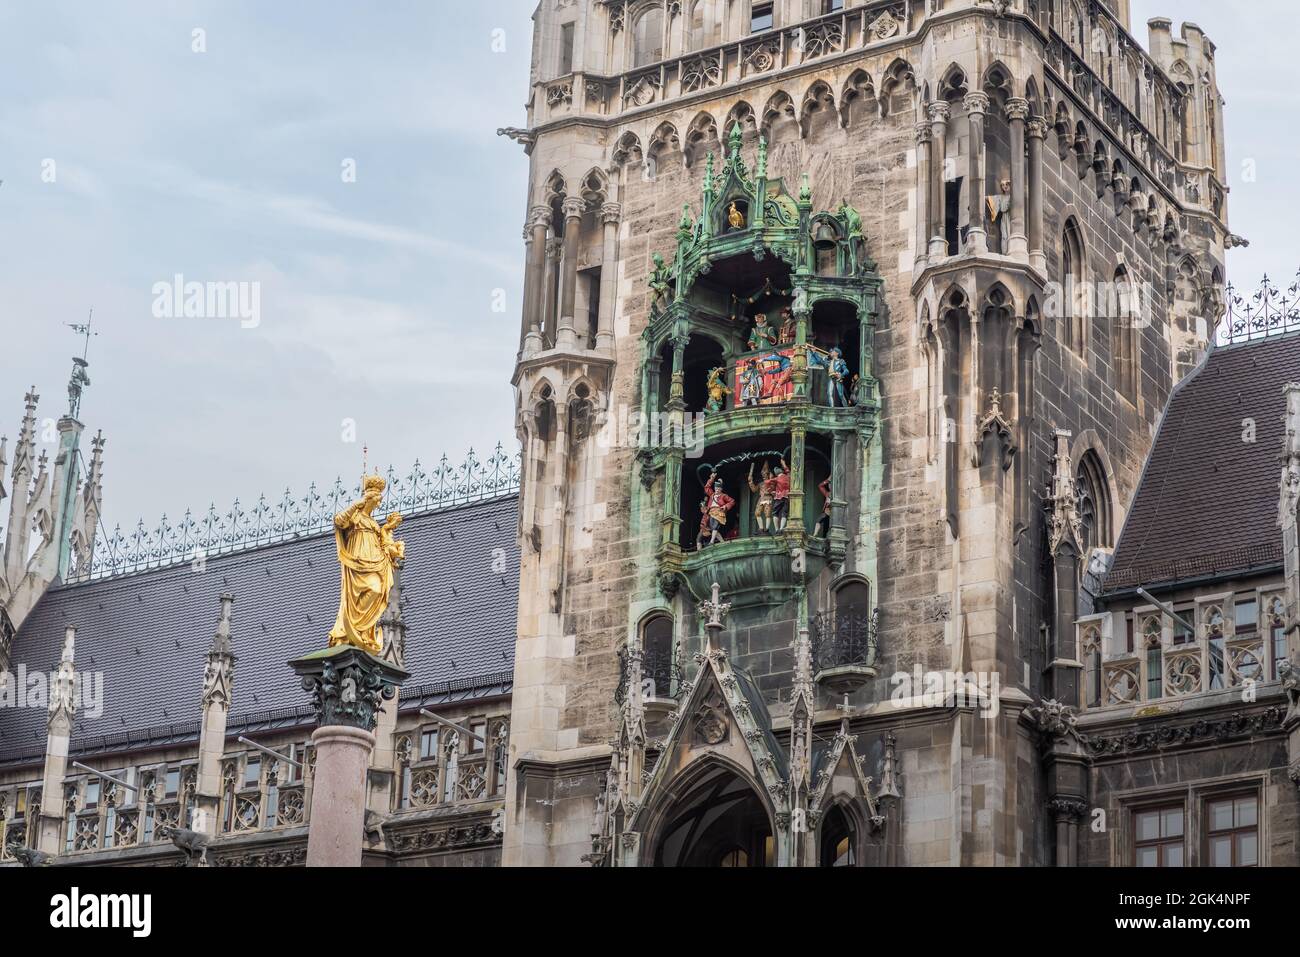 Horloge Glockenspiel de la nouvelle mairie (Neues Rathaus) Tour et colonne Mariensäule - Munich, Bavière, Allemagne Banque D'Images